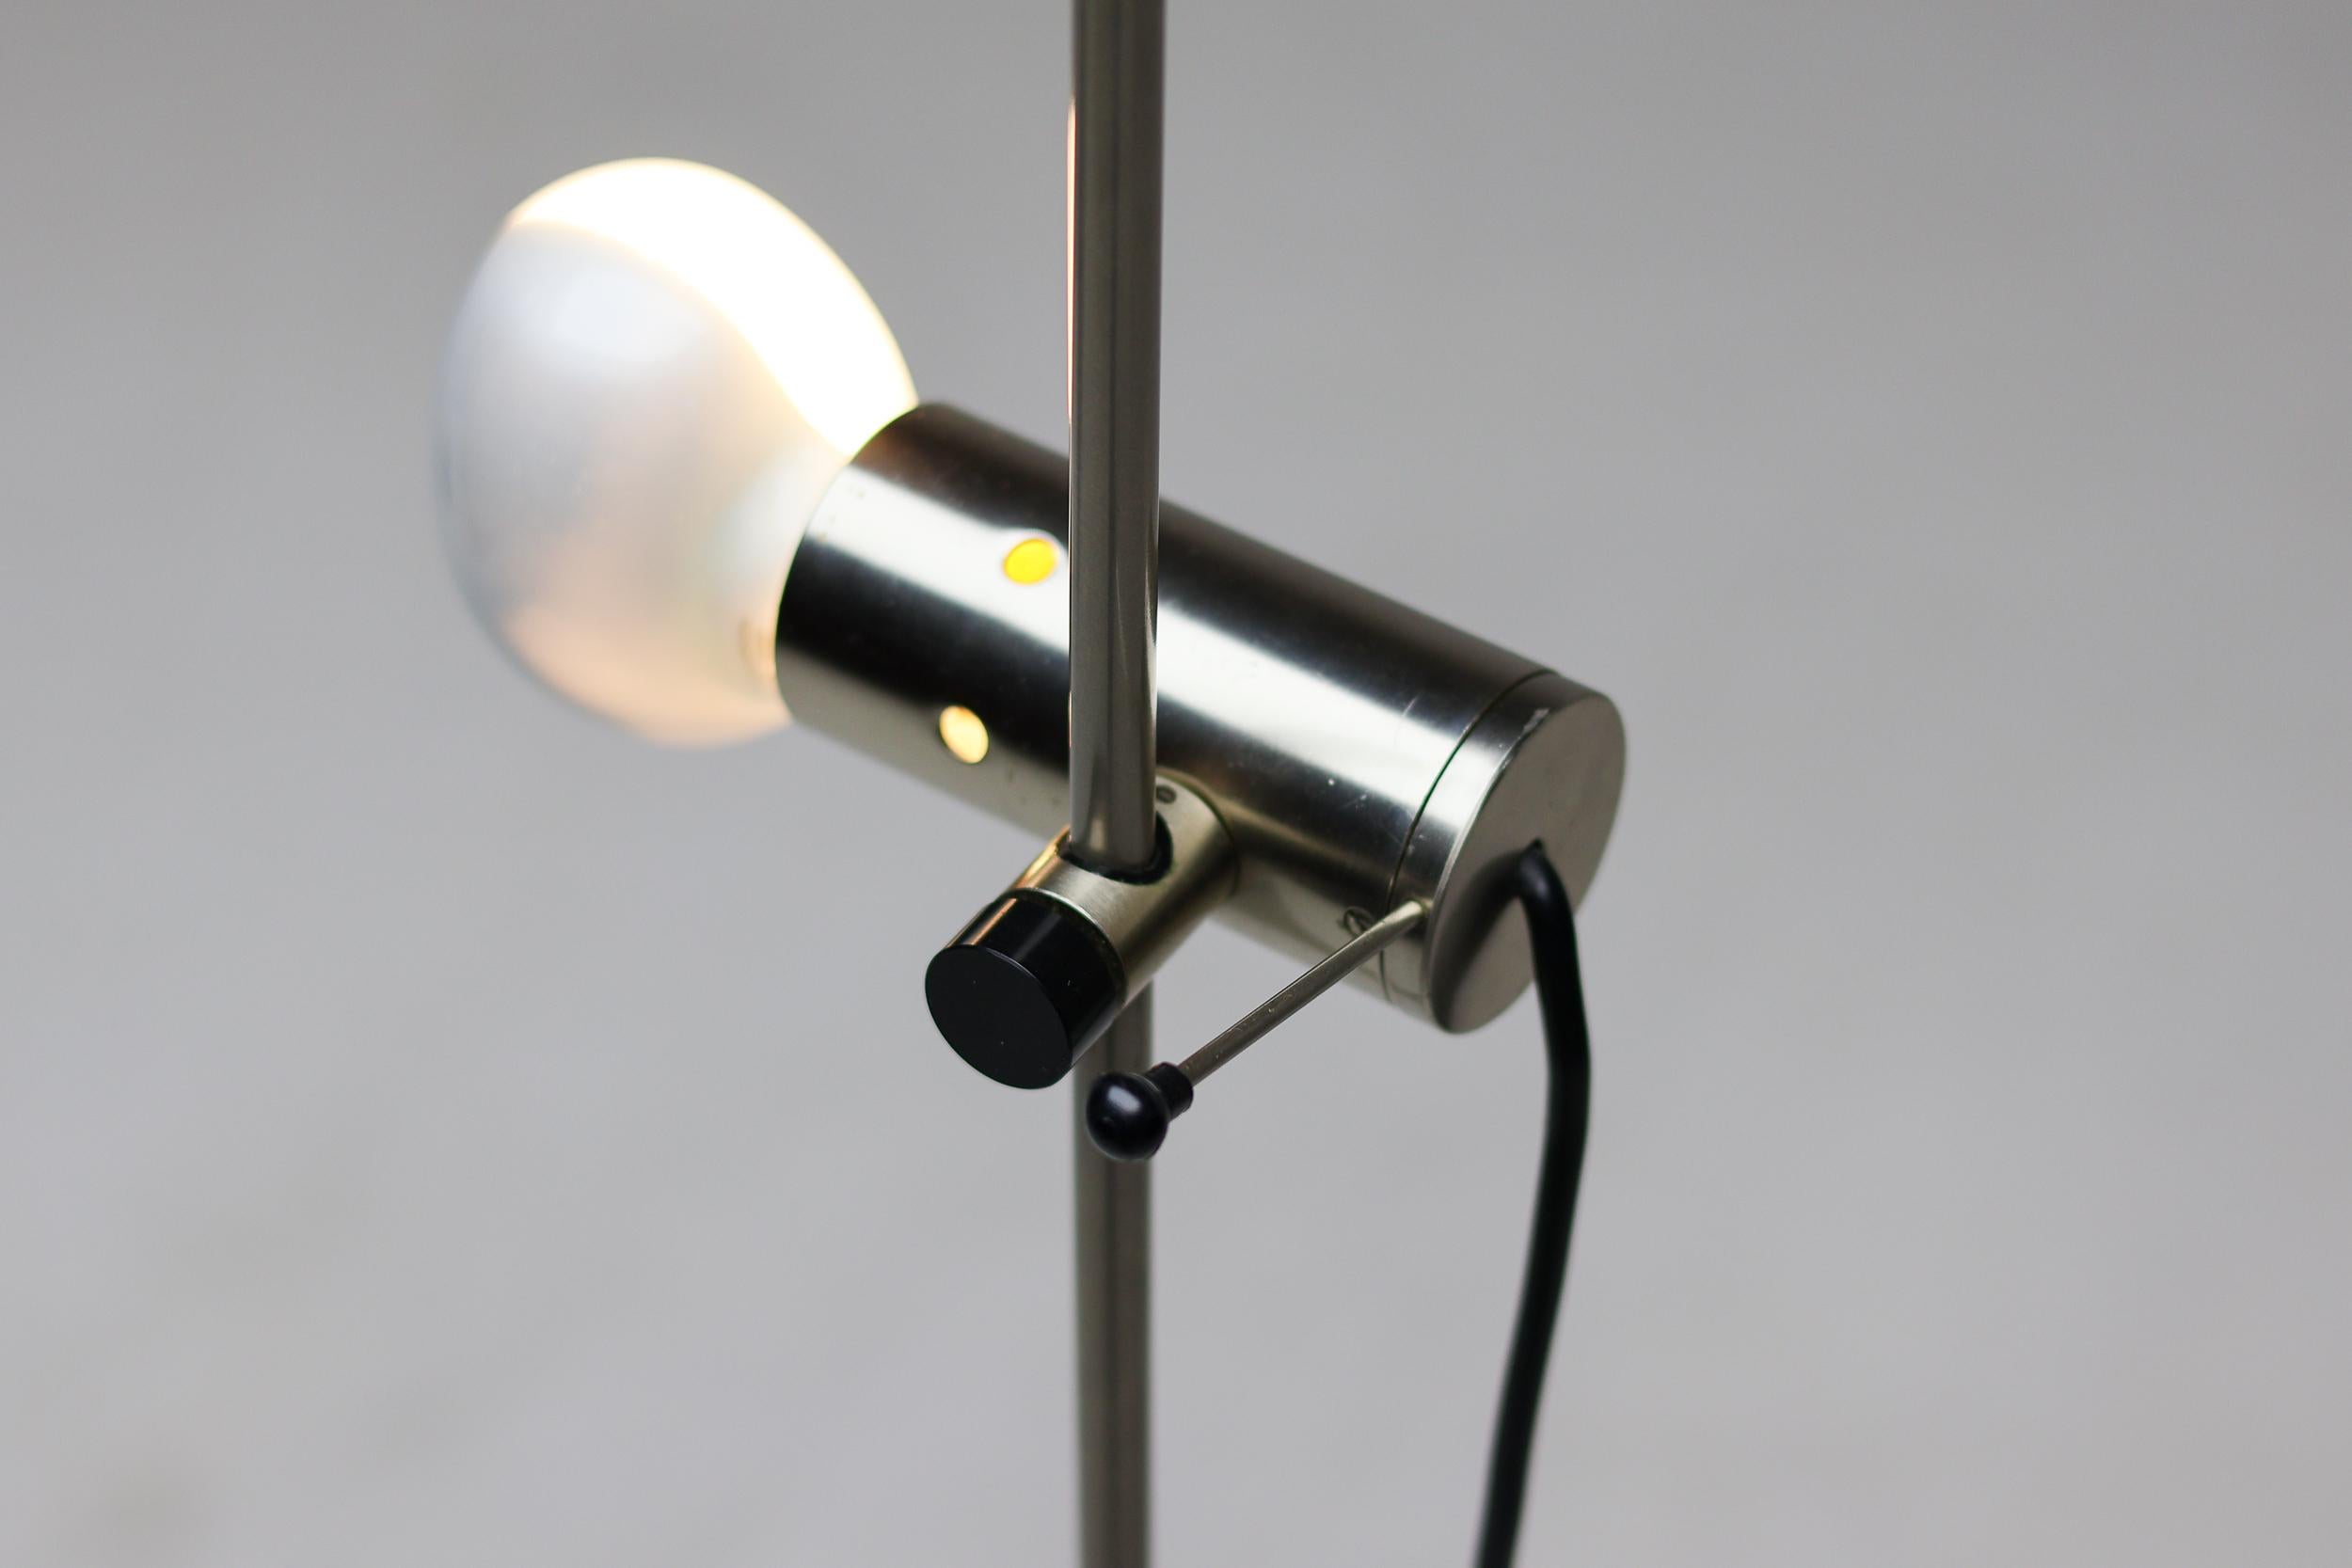 Original lampadaire 387 des années 1950, conçu par Tito Agnoli pour O-Luce, en acier nickelé avec une base en travertin.
Bel état d'origine, la perche permettant de faire pivoter l'abat-jour sur 360 degrés est toujours présente. 
Icone d'éclairage